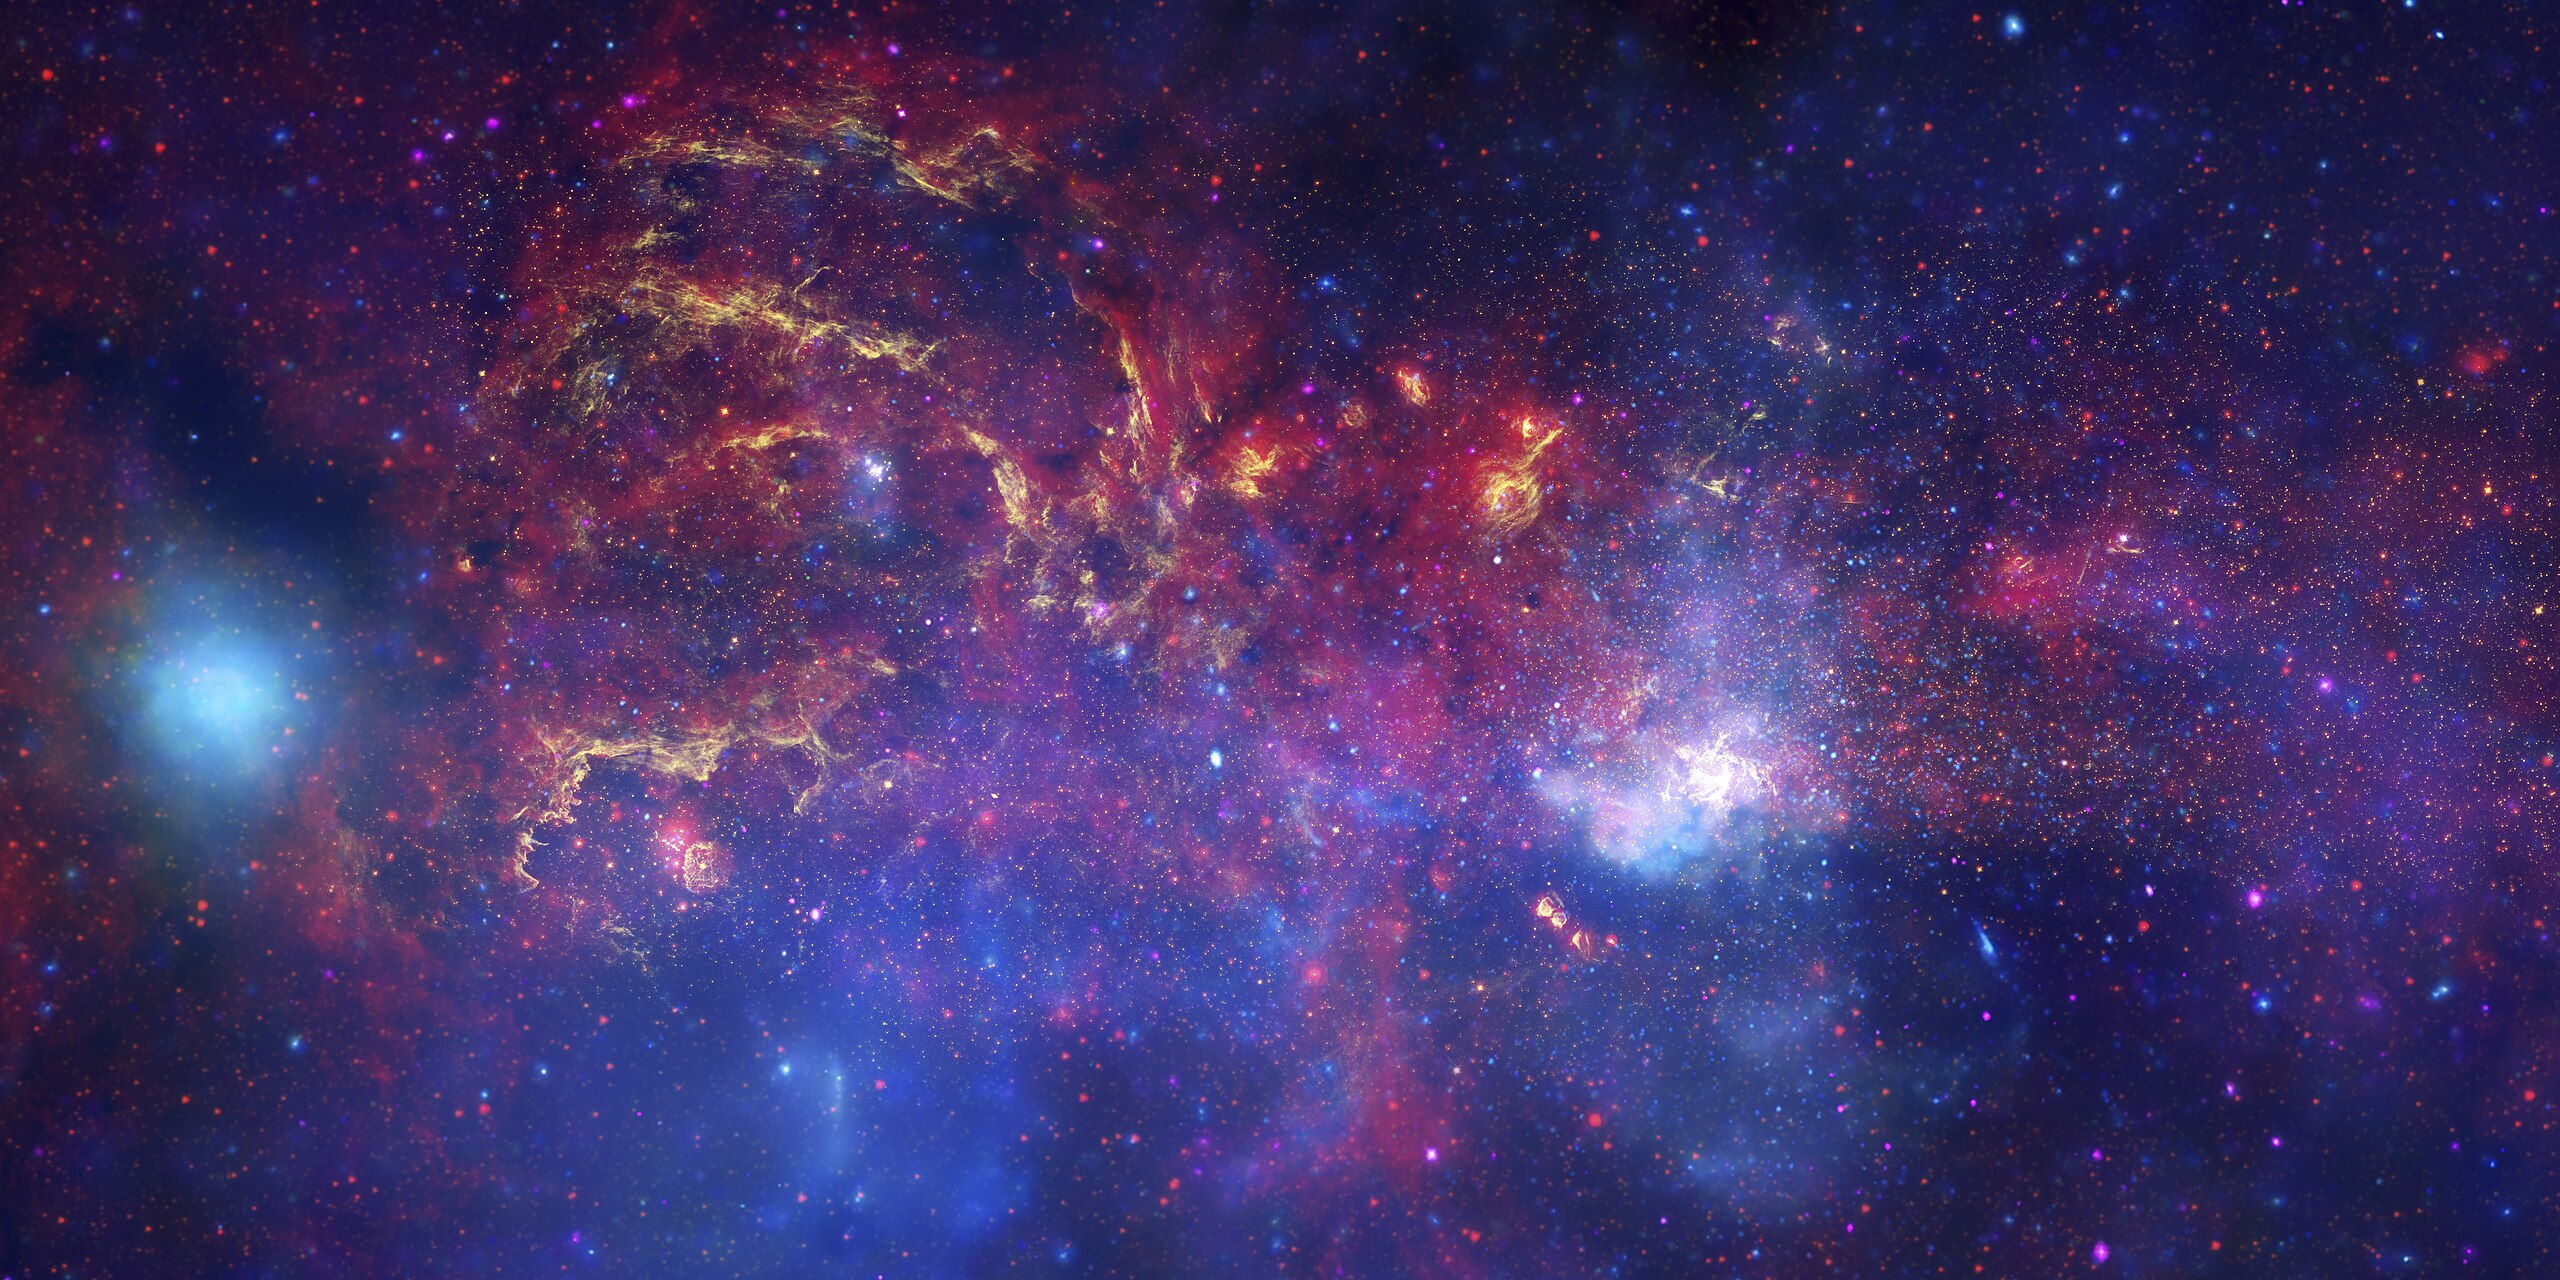 Center of the Milky Way Galaxy: Hình ảnh điểm trung tâm của thiên hà Vía Lactea sẽ khiến bạn phải ngạc nhiên với vẻ đẹp của nó. Nét đậm chất vũ trụ, quyến rũ và bí ẩn của những thiên thể lớn hơn mà bạn từng tưởng tượng. Hãy cùng tham gia và khám phá những bí mật tuyệt vời của vũ trụ này.